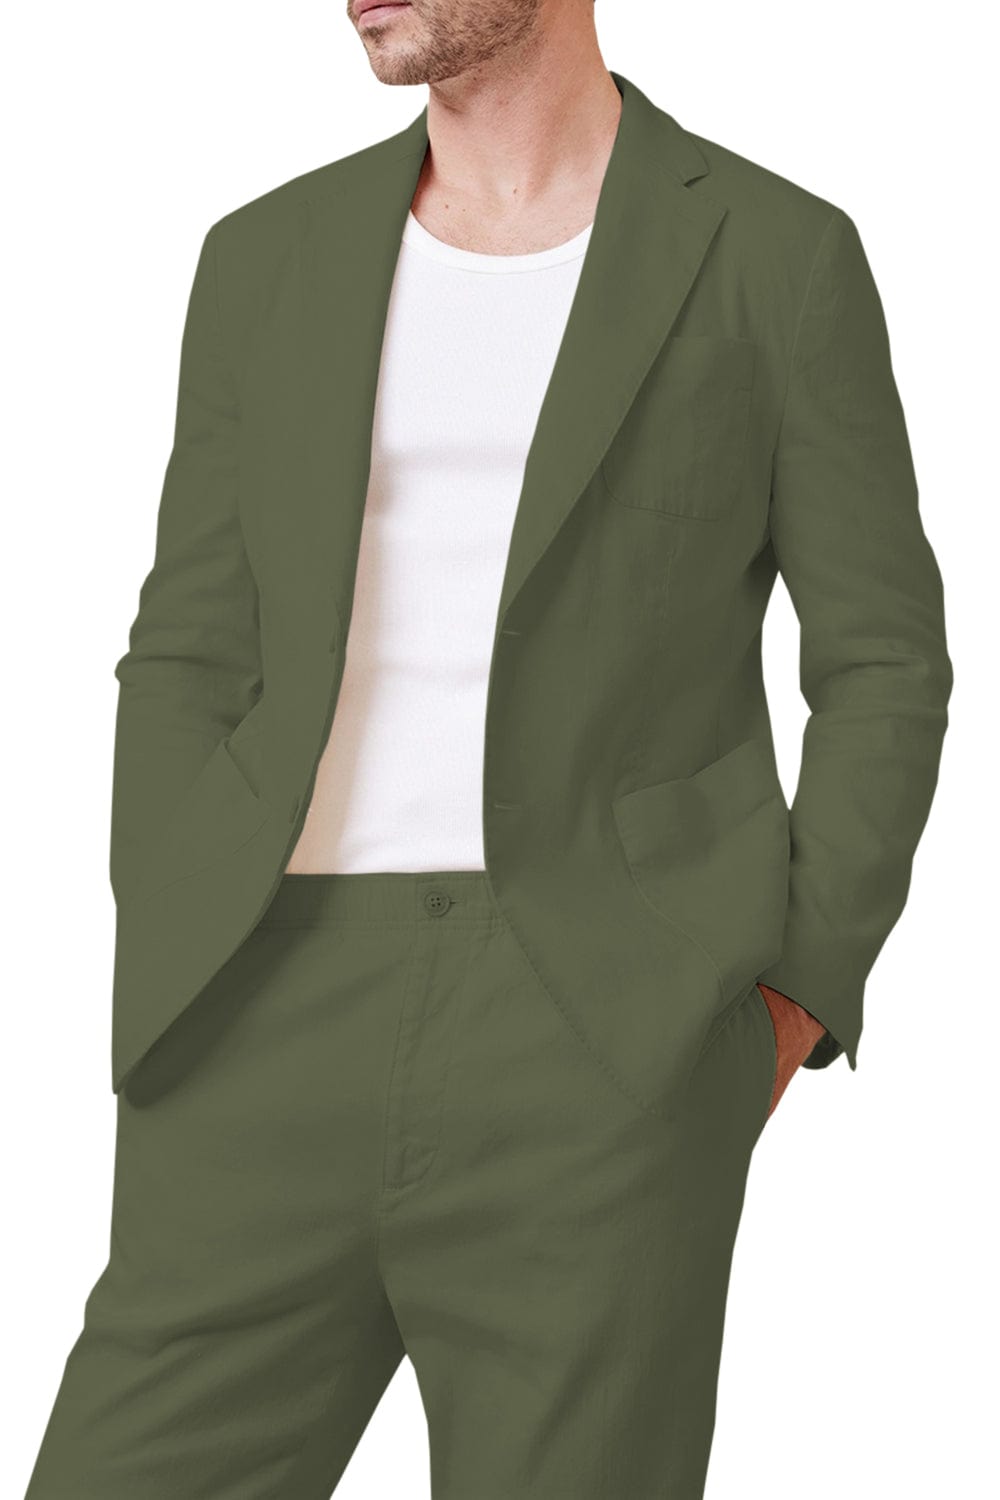 aesido Casual Men's Suit 2 Piece Double Button Jacket (Blazer+Pants)